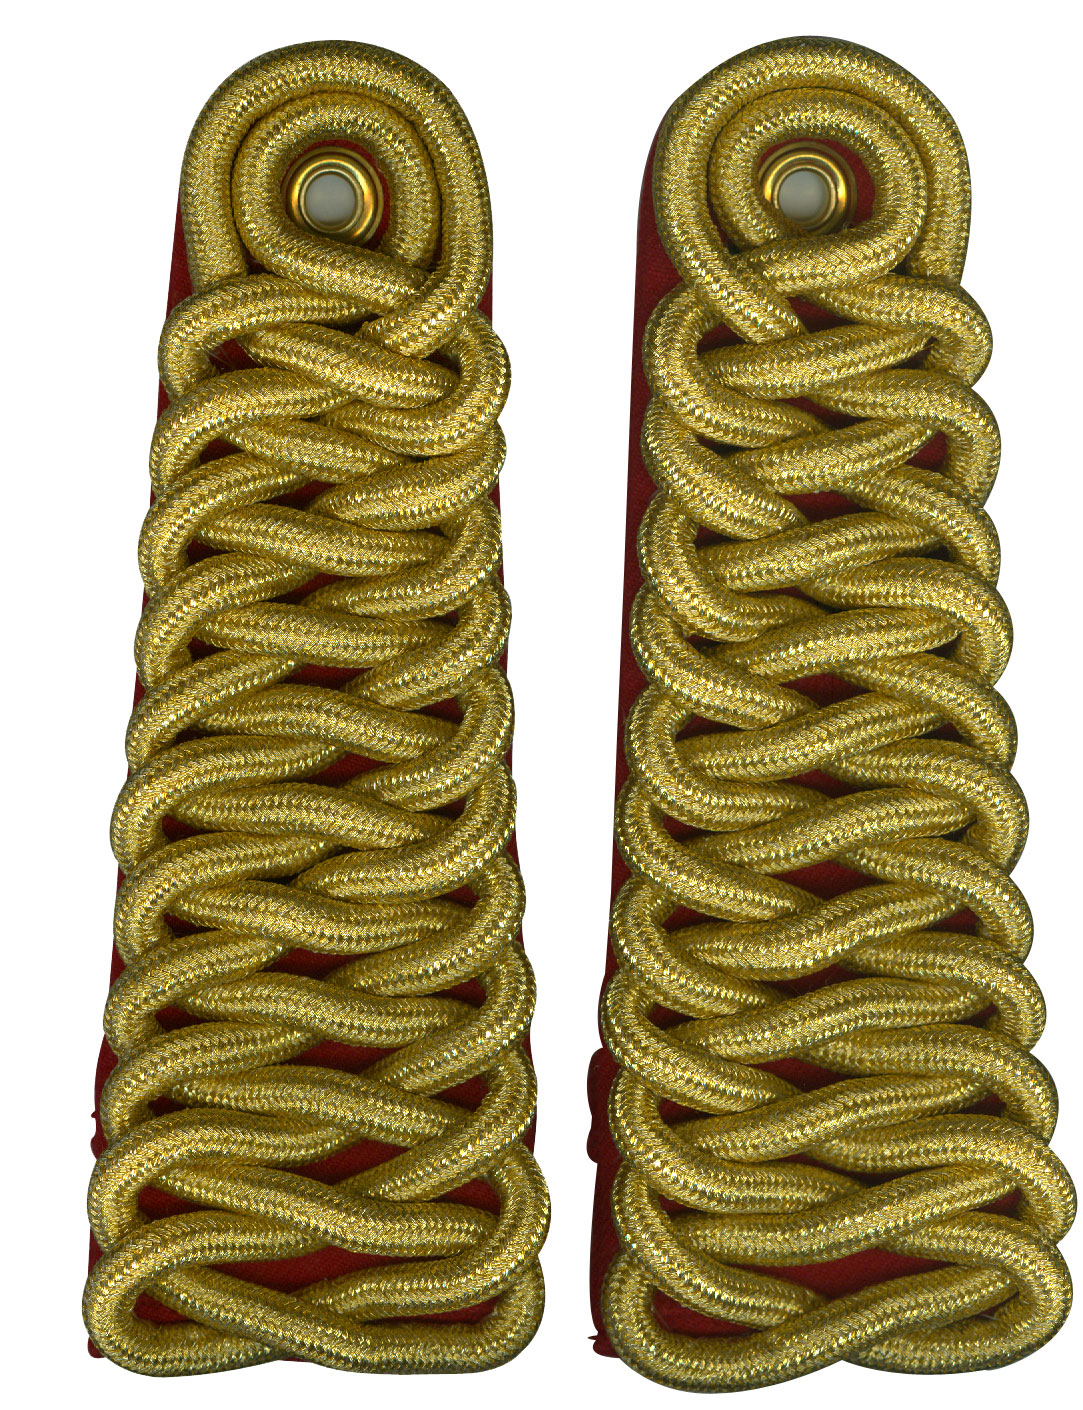 RCMP Shoulder Cords